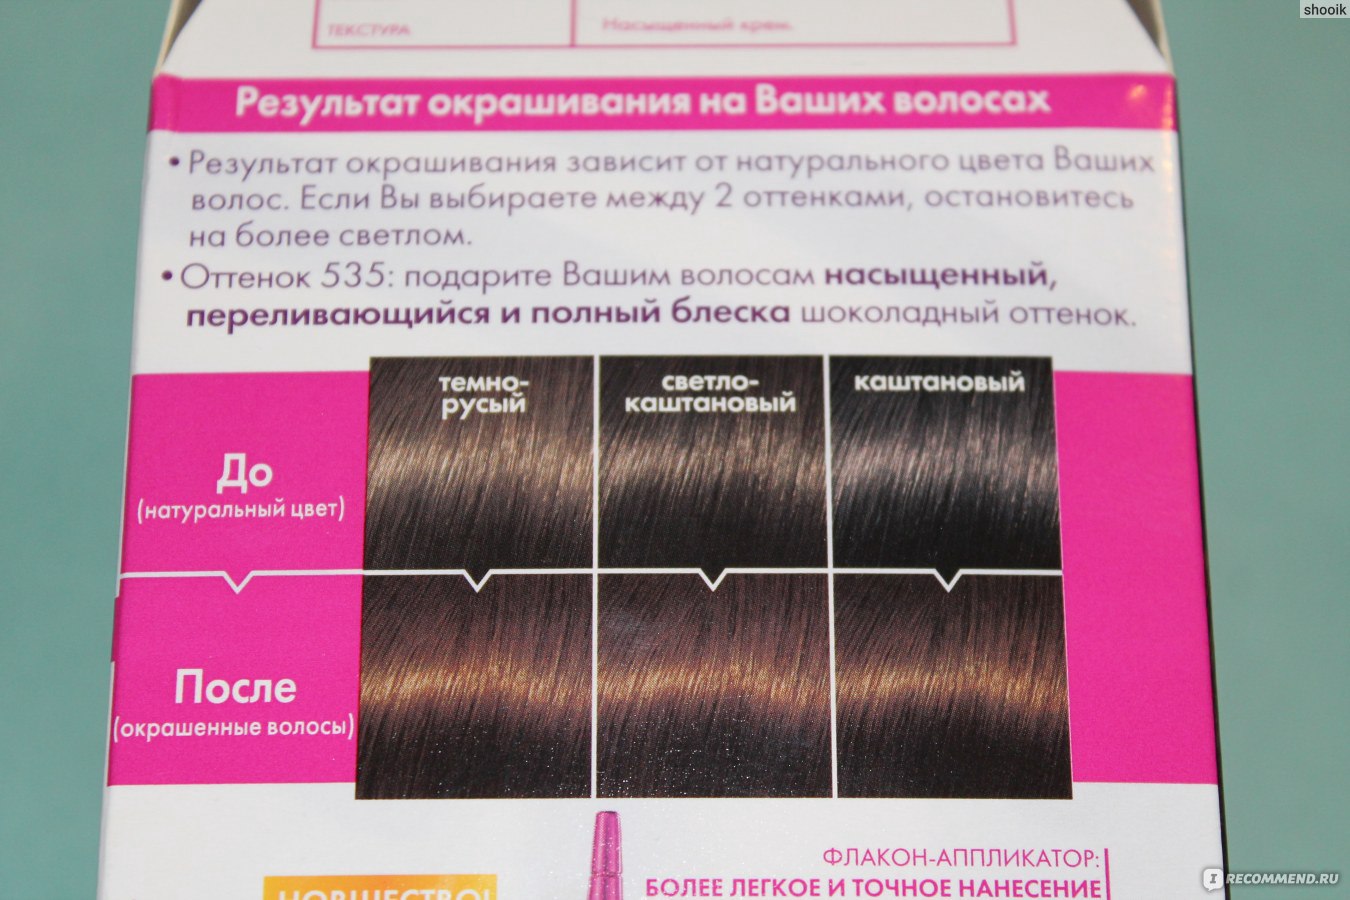 Как пользоваться профессиональной краской для волос лореаль